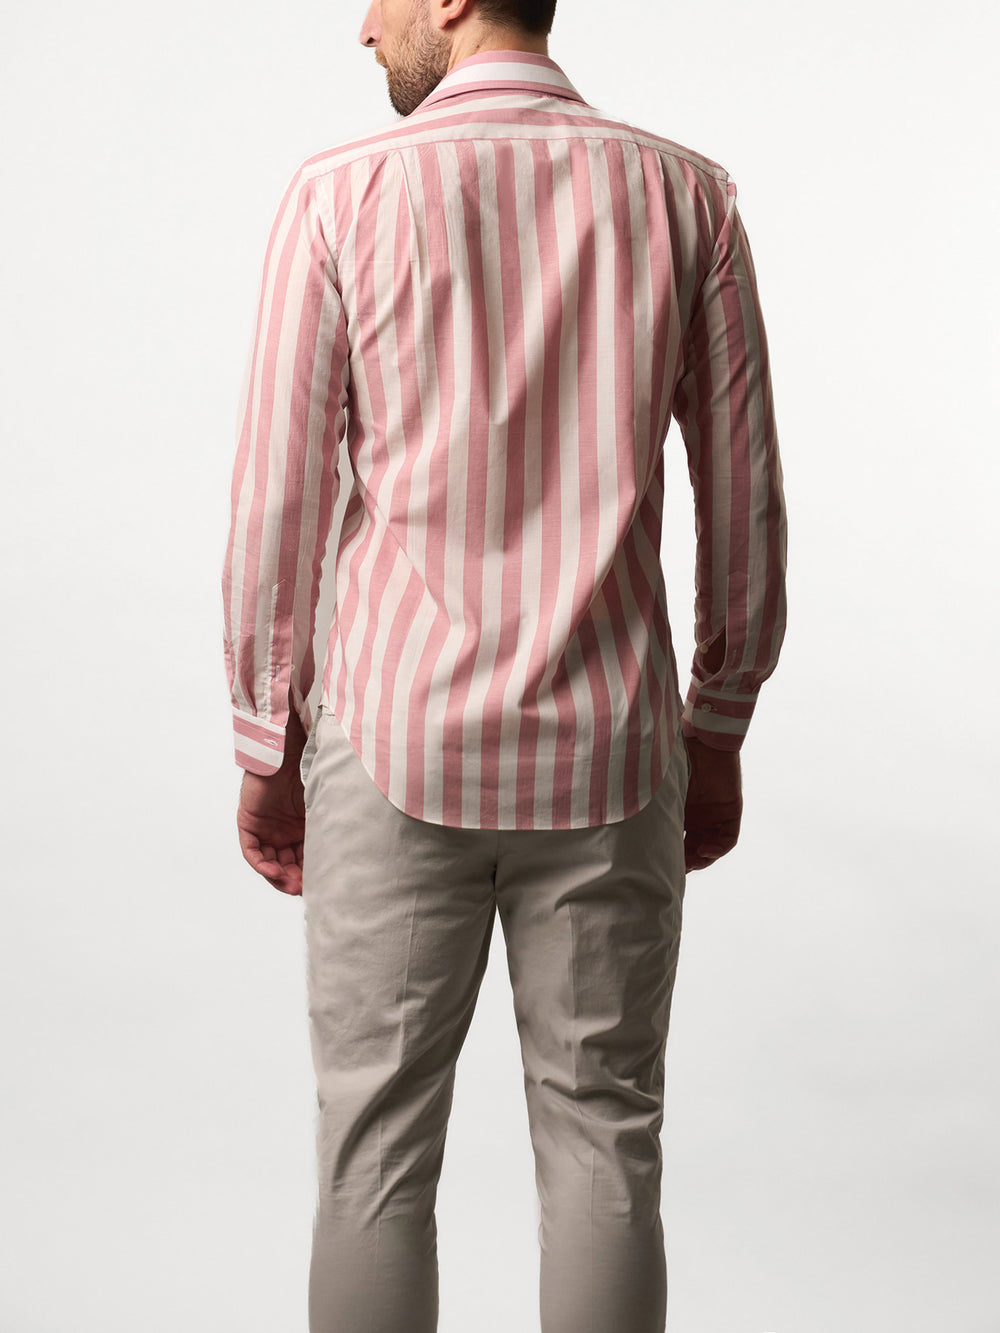 休閒條紋白/粉紅色襯衫